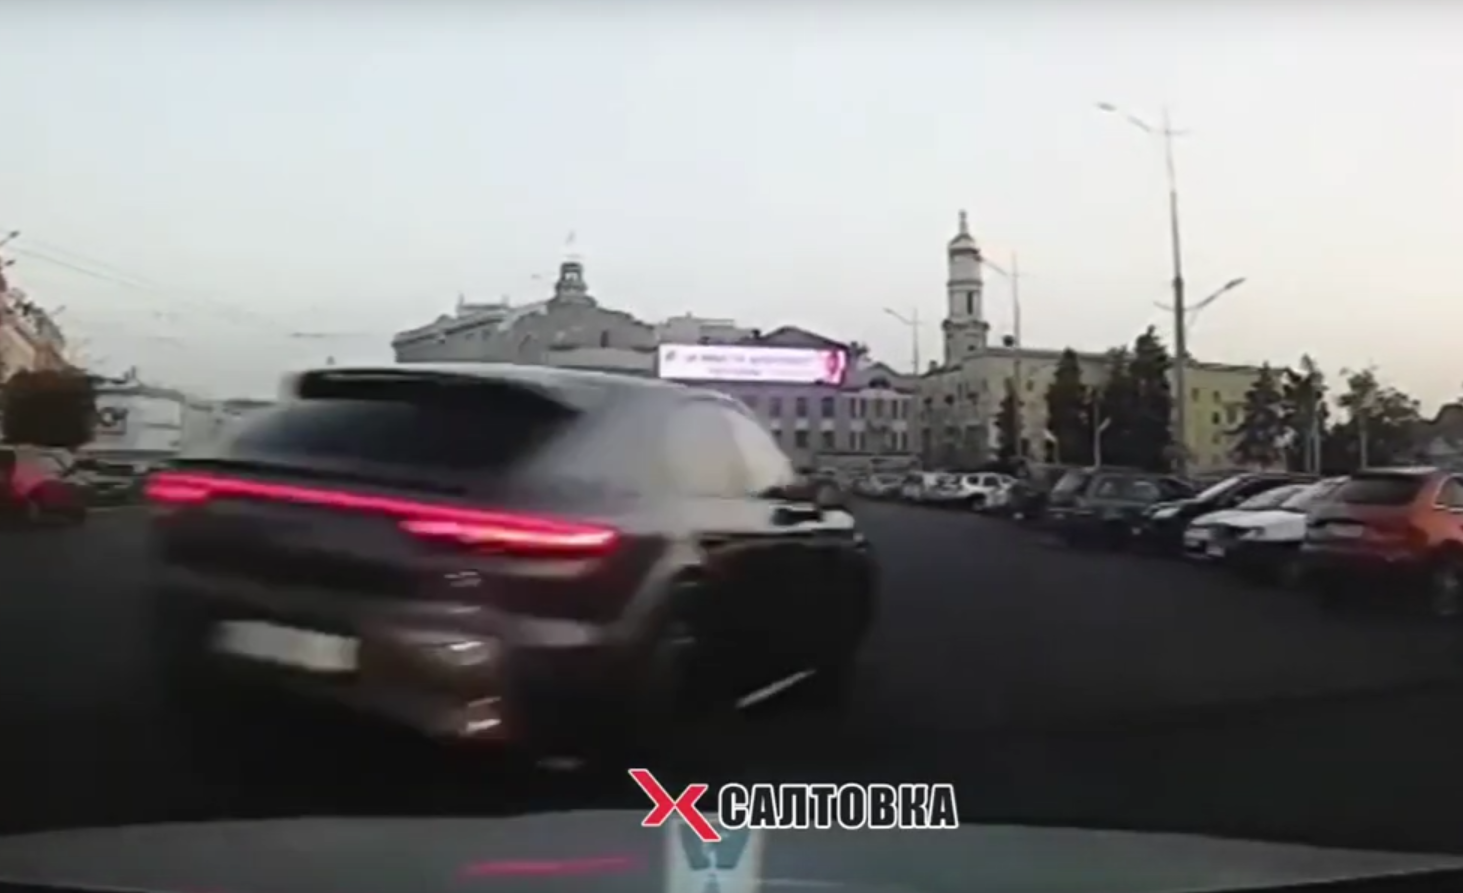 Харьковчане возмущены манерой езды водителя Porsche (видео)